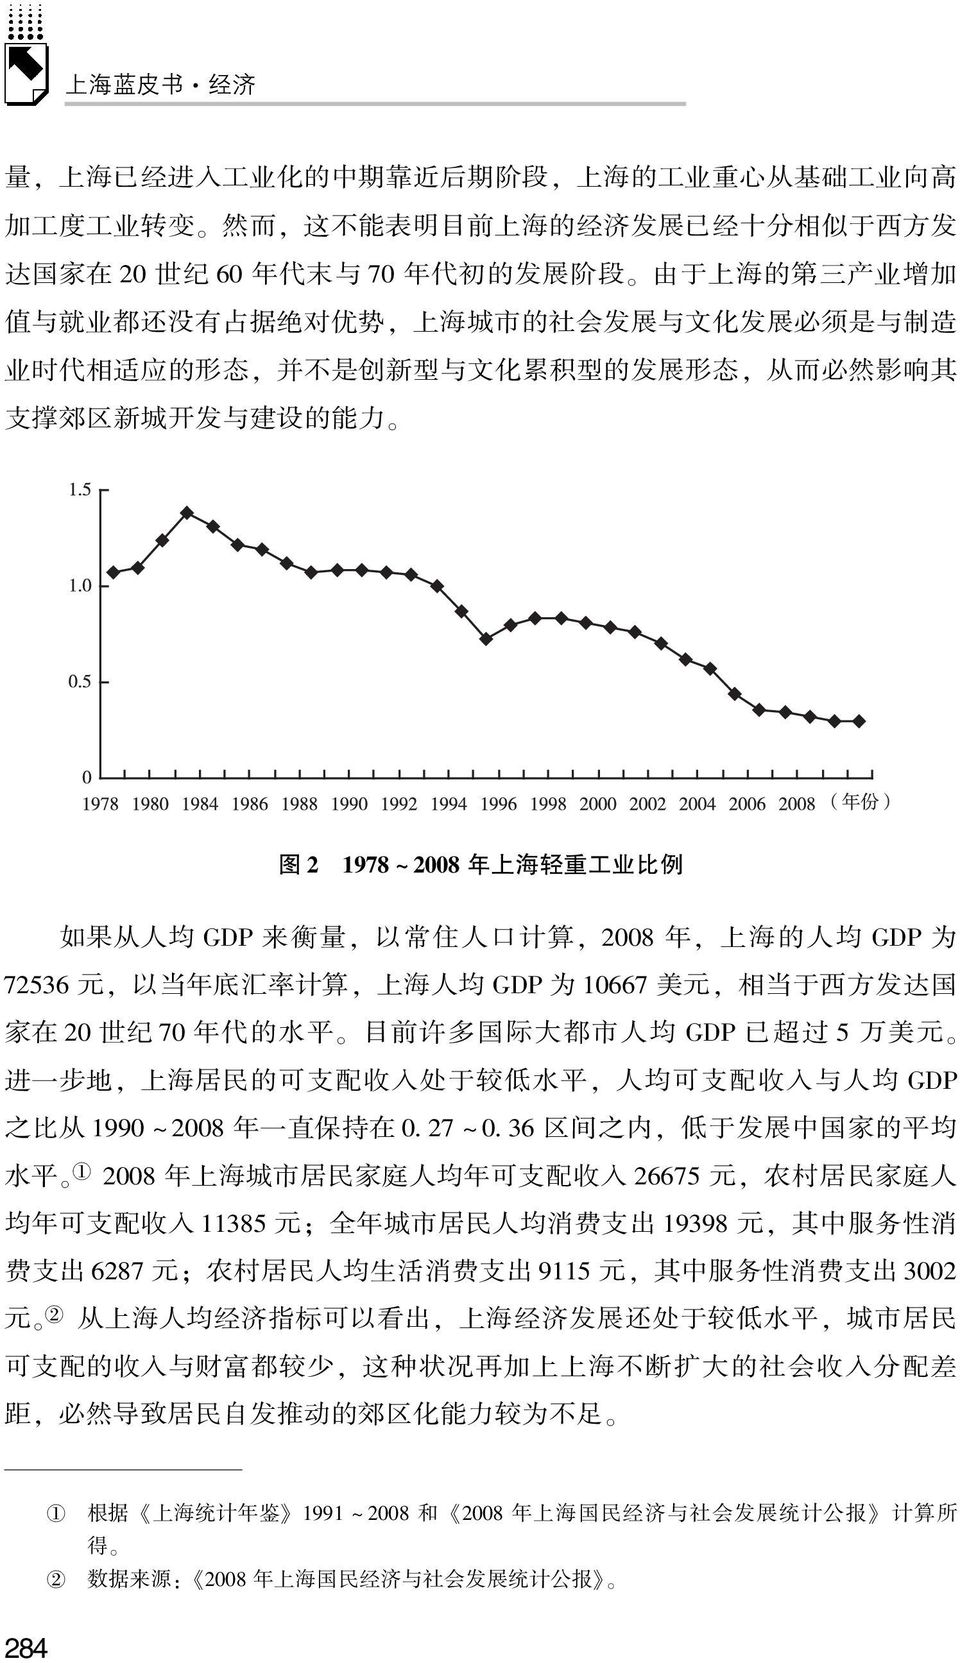 上 海 轻 重 工 业 比 例 如 果 从 人 均 GDP 来 衡 量, 以 常 住 人 口 计 算, 2008 年, 上 海 的 人 均 GDP 为 72536 元, 以 当 年 底 汇 率 计 算, 上 海 人 均 GDP 为 10667 美 元, 相 当 于 西 方 发 达 国 家 在 20 世 纪 70 年 代 的 水 平 目 前 许 多 国 际 大 都 市 人 均 GDP 已 超 过